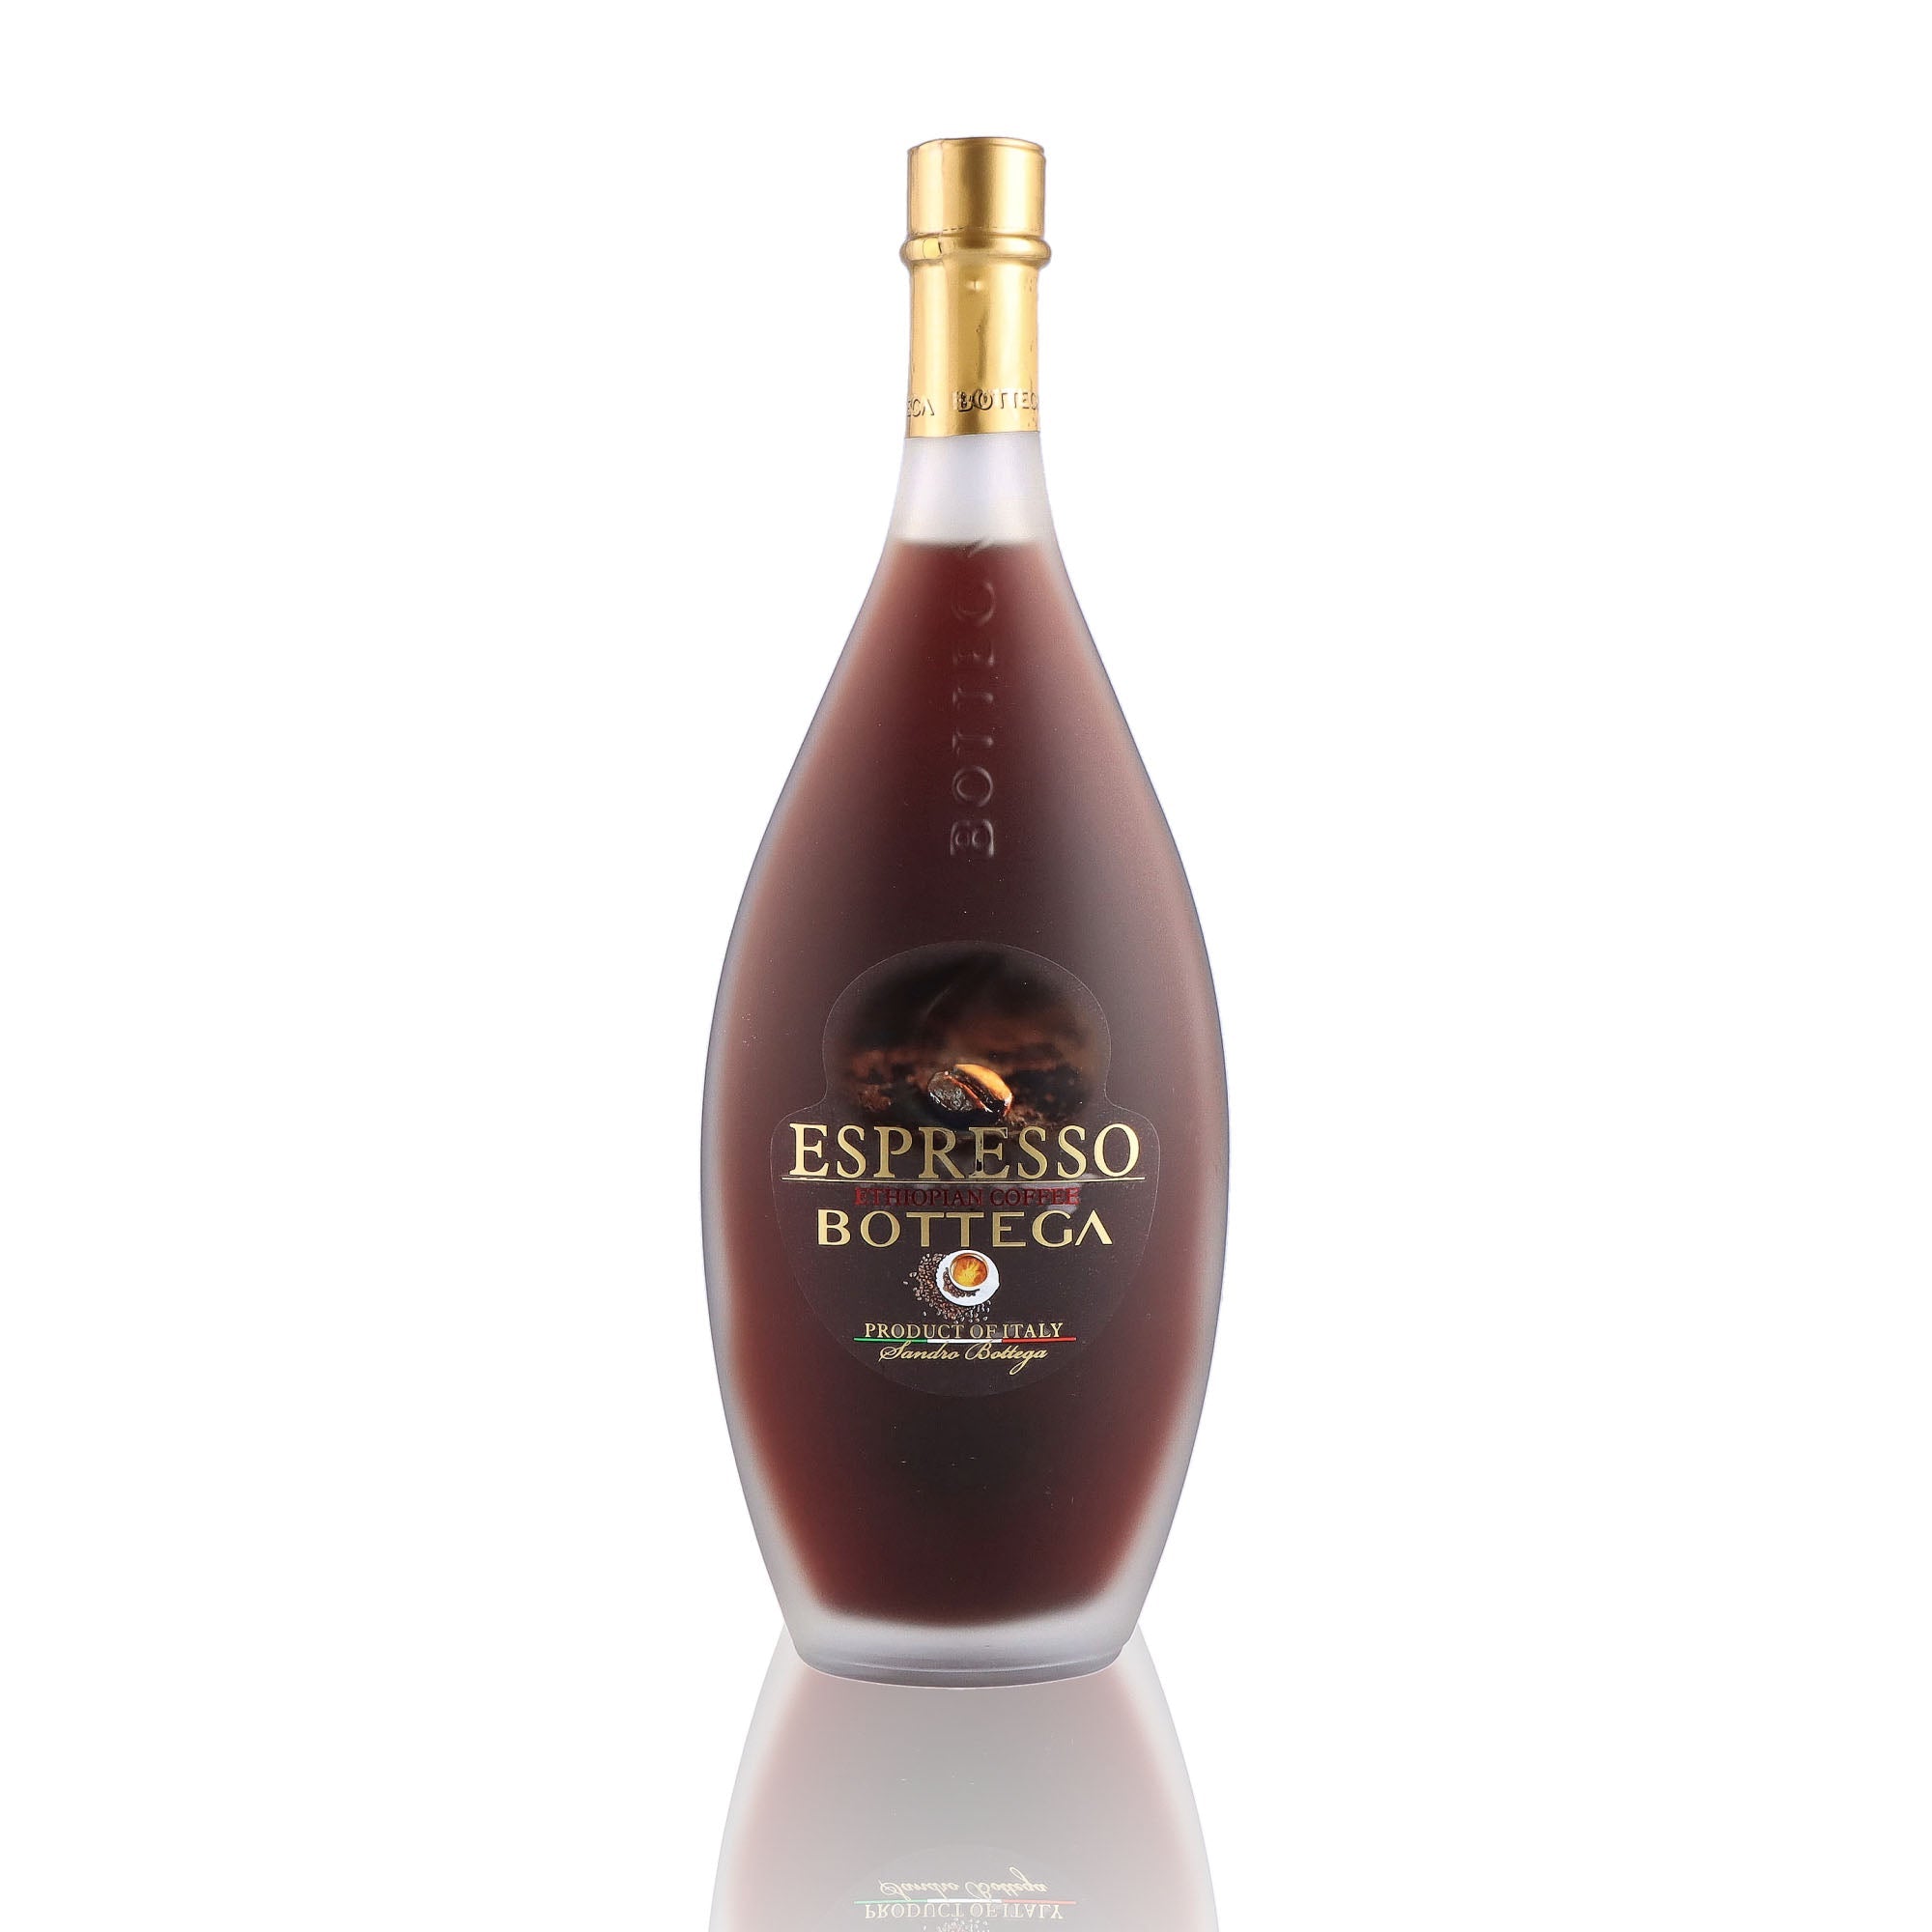 Une bouteille de Liqueur, de la marque Bottega, nommée Espresso.